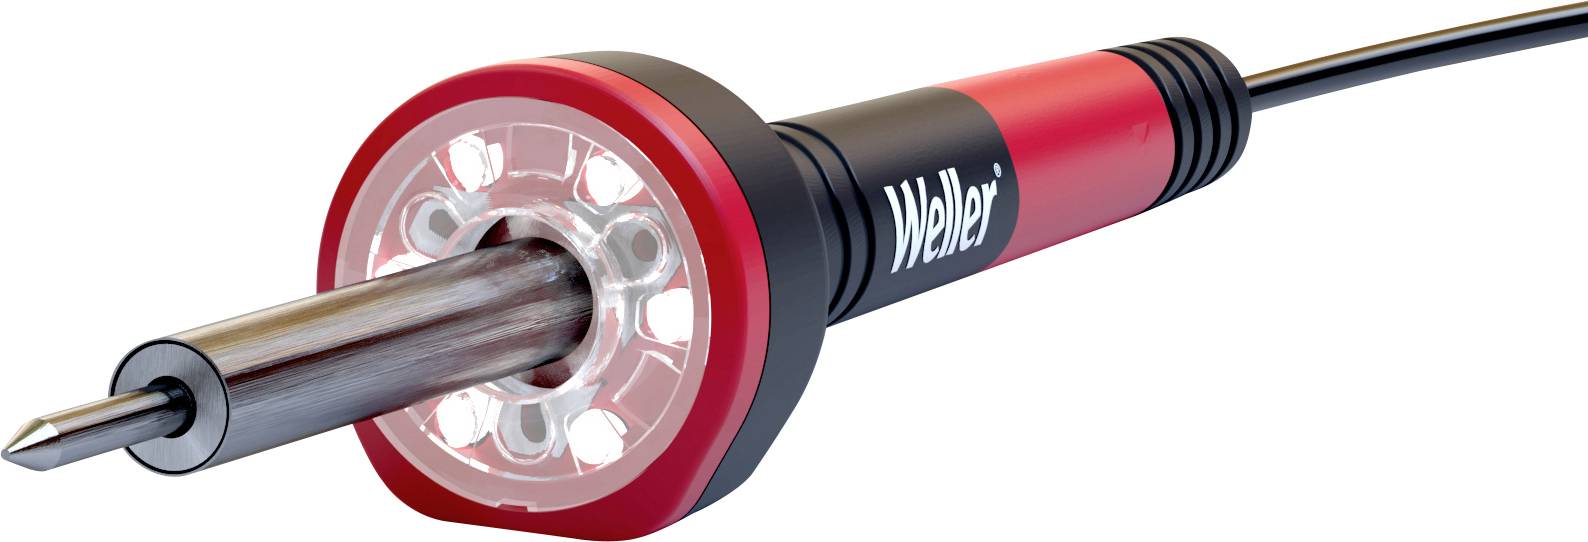 WELLER WLIR3023G Lötkolben 230 V 30 W Konisch 400 °C (max) inkl. LED-Beleuchtung (WLIR3023G)